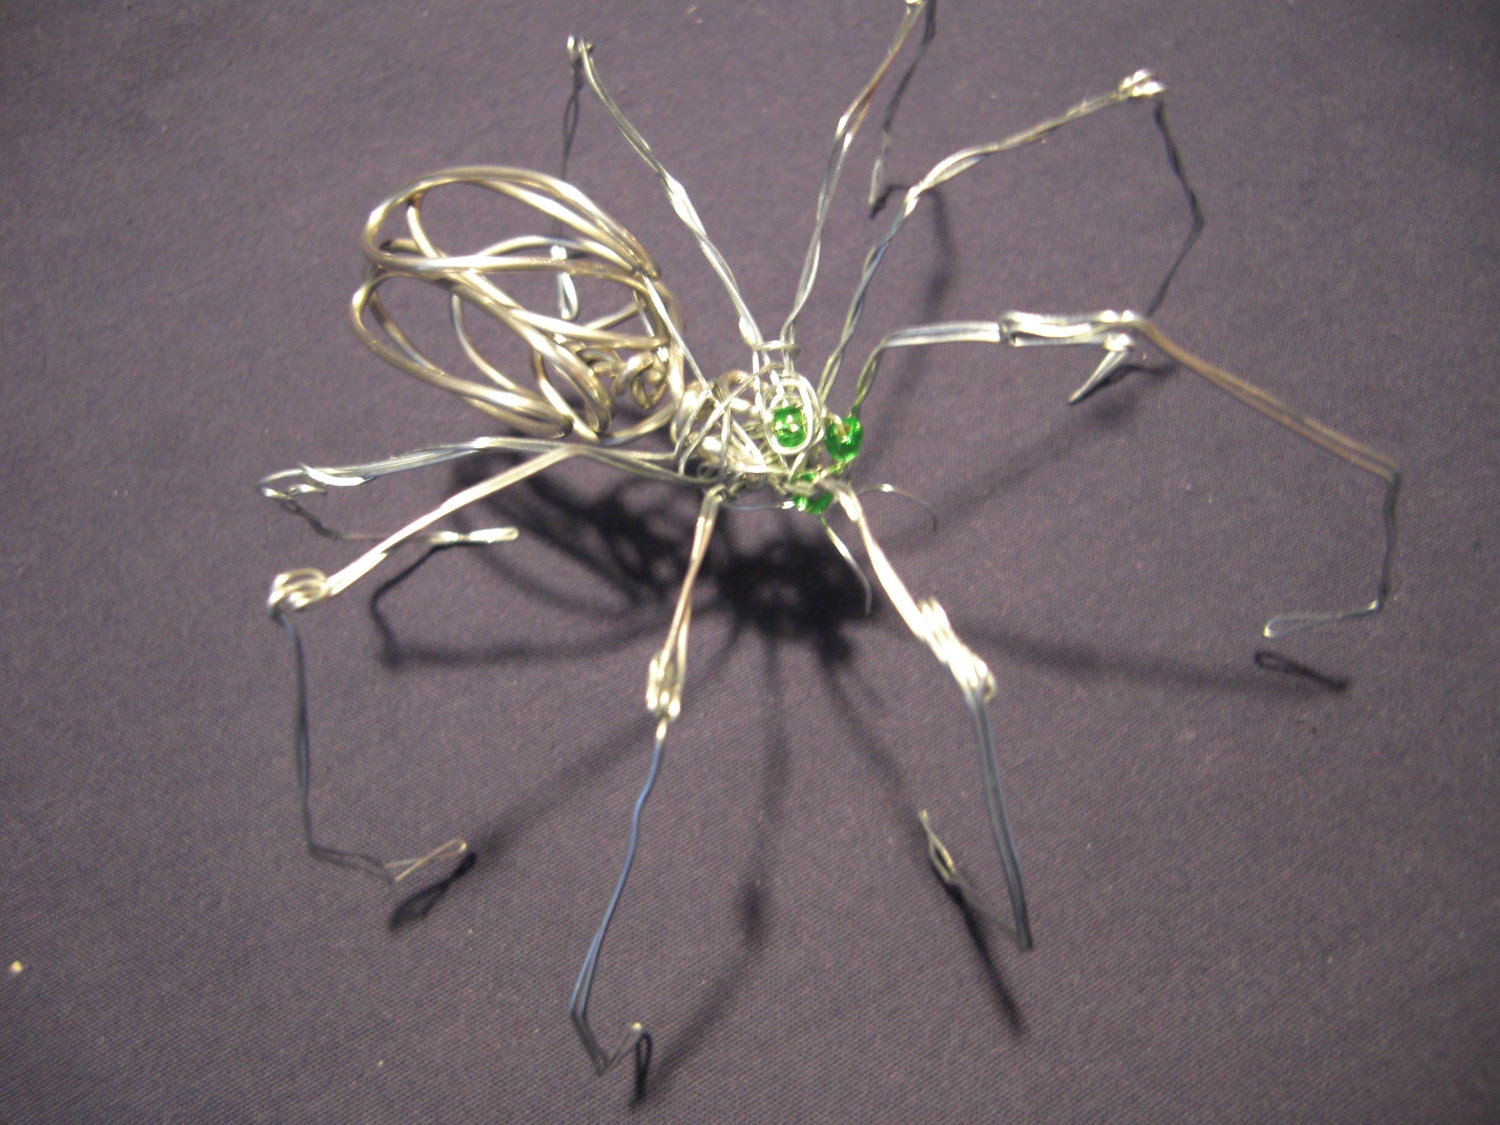 Spider Wire Sculpture